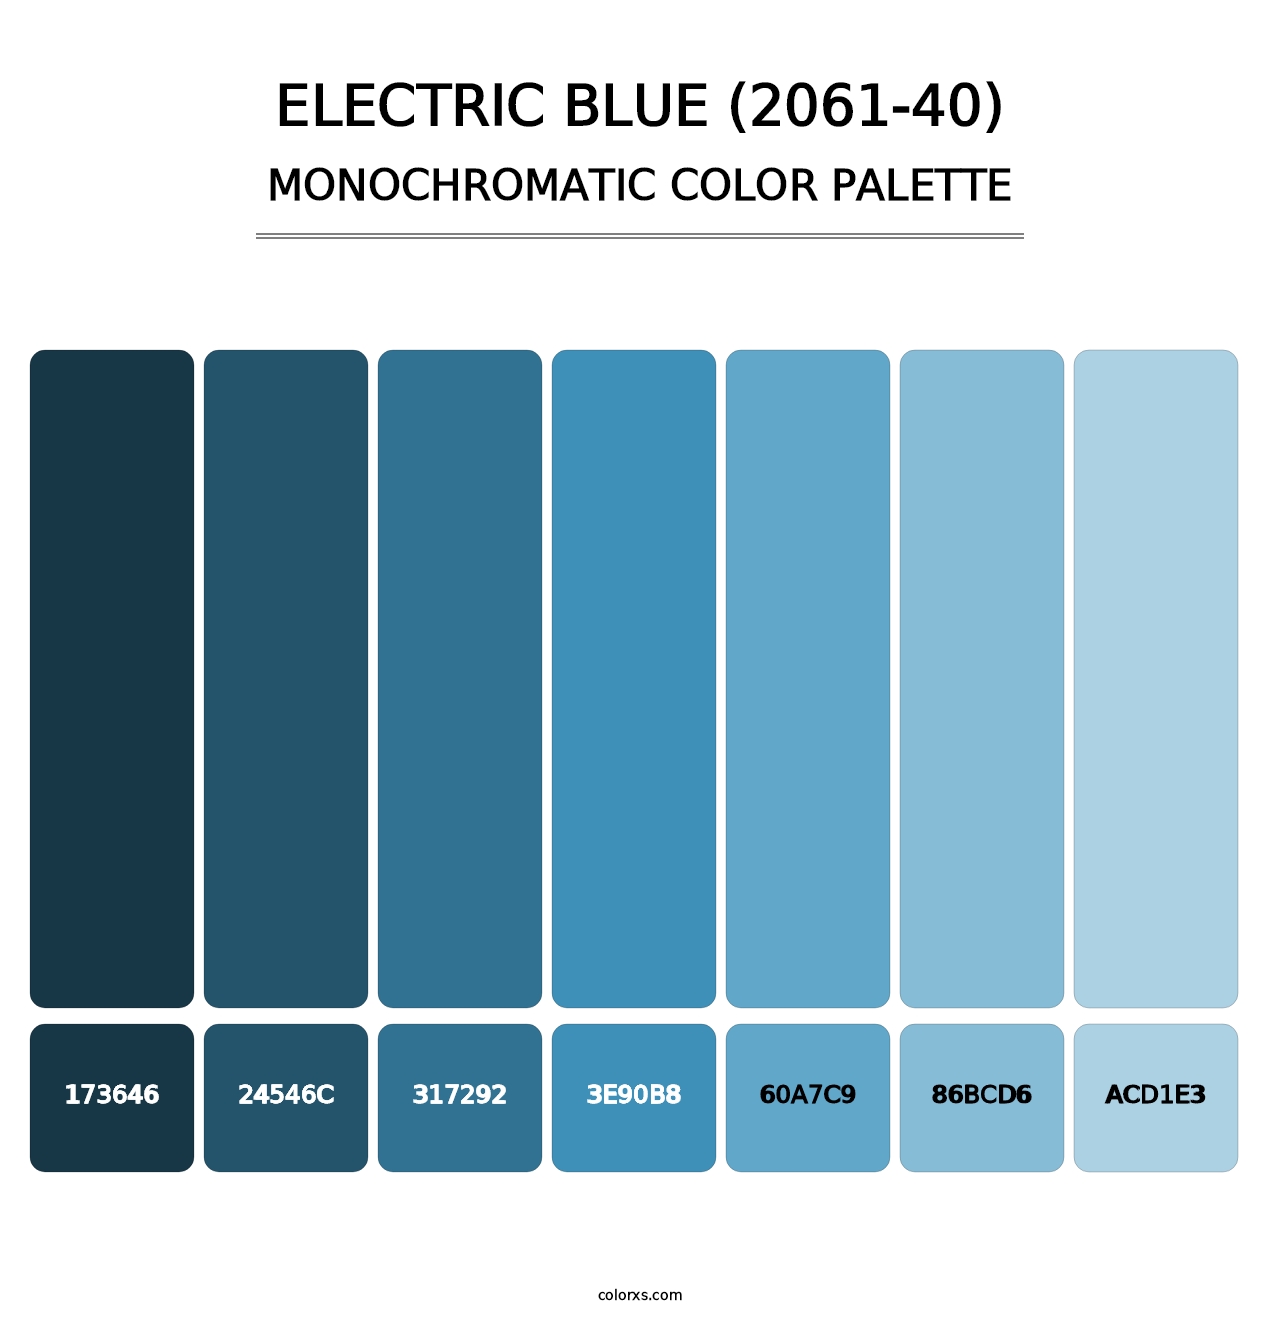 Electric Blue (2061-40) - Monochromatic Color Palette